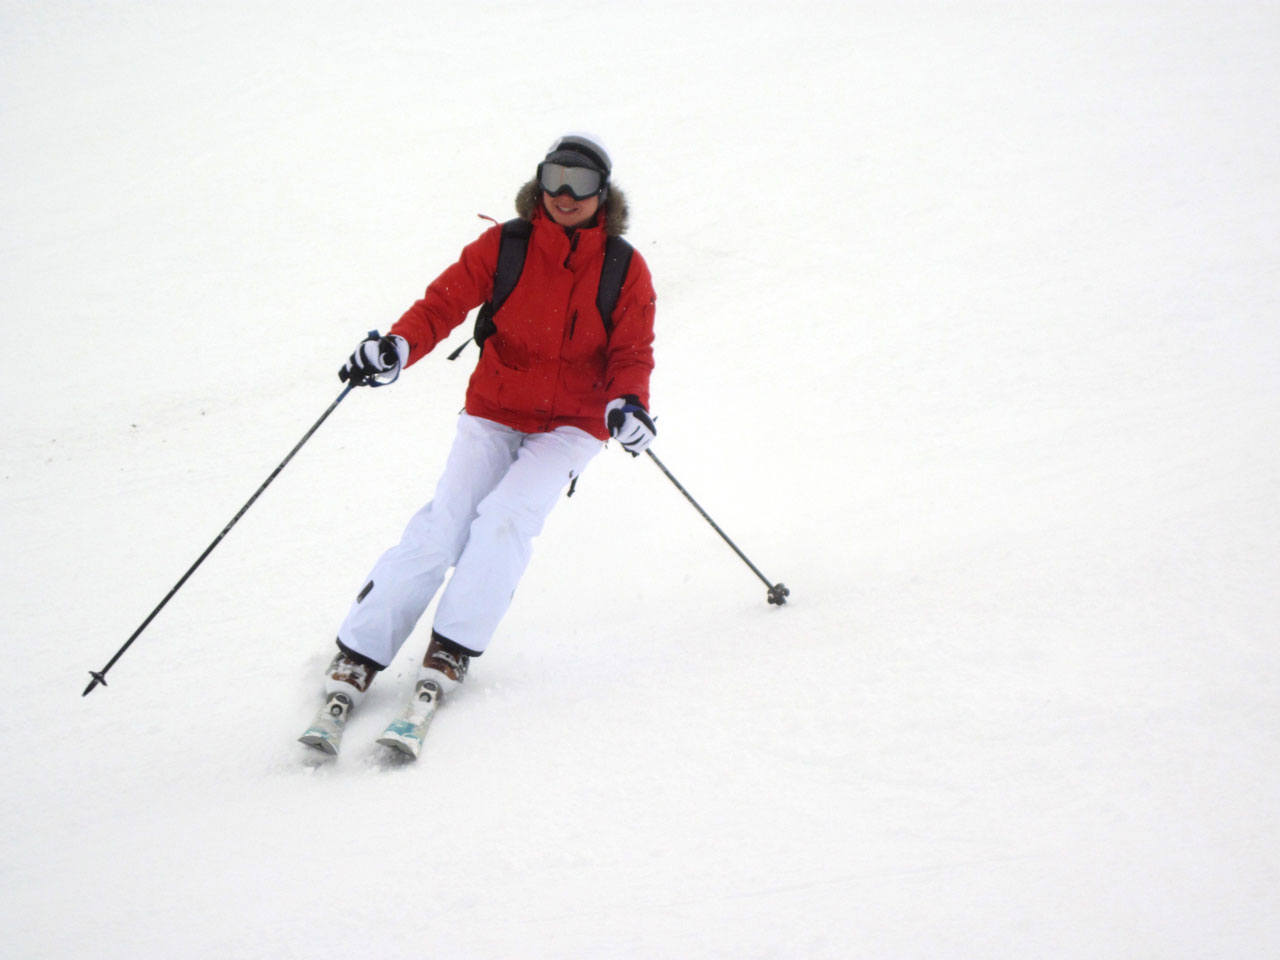 Esquiador em acção